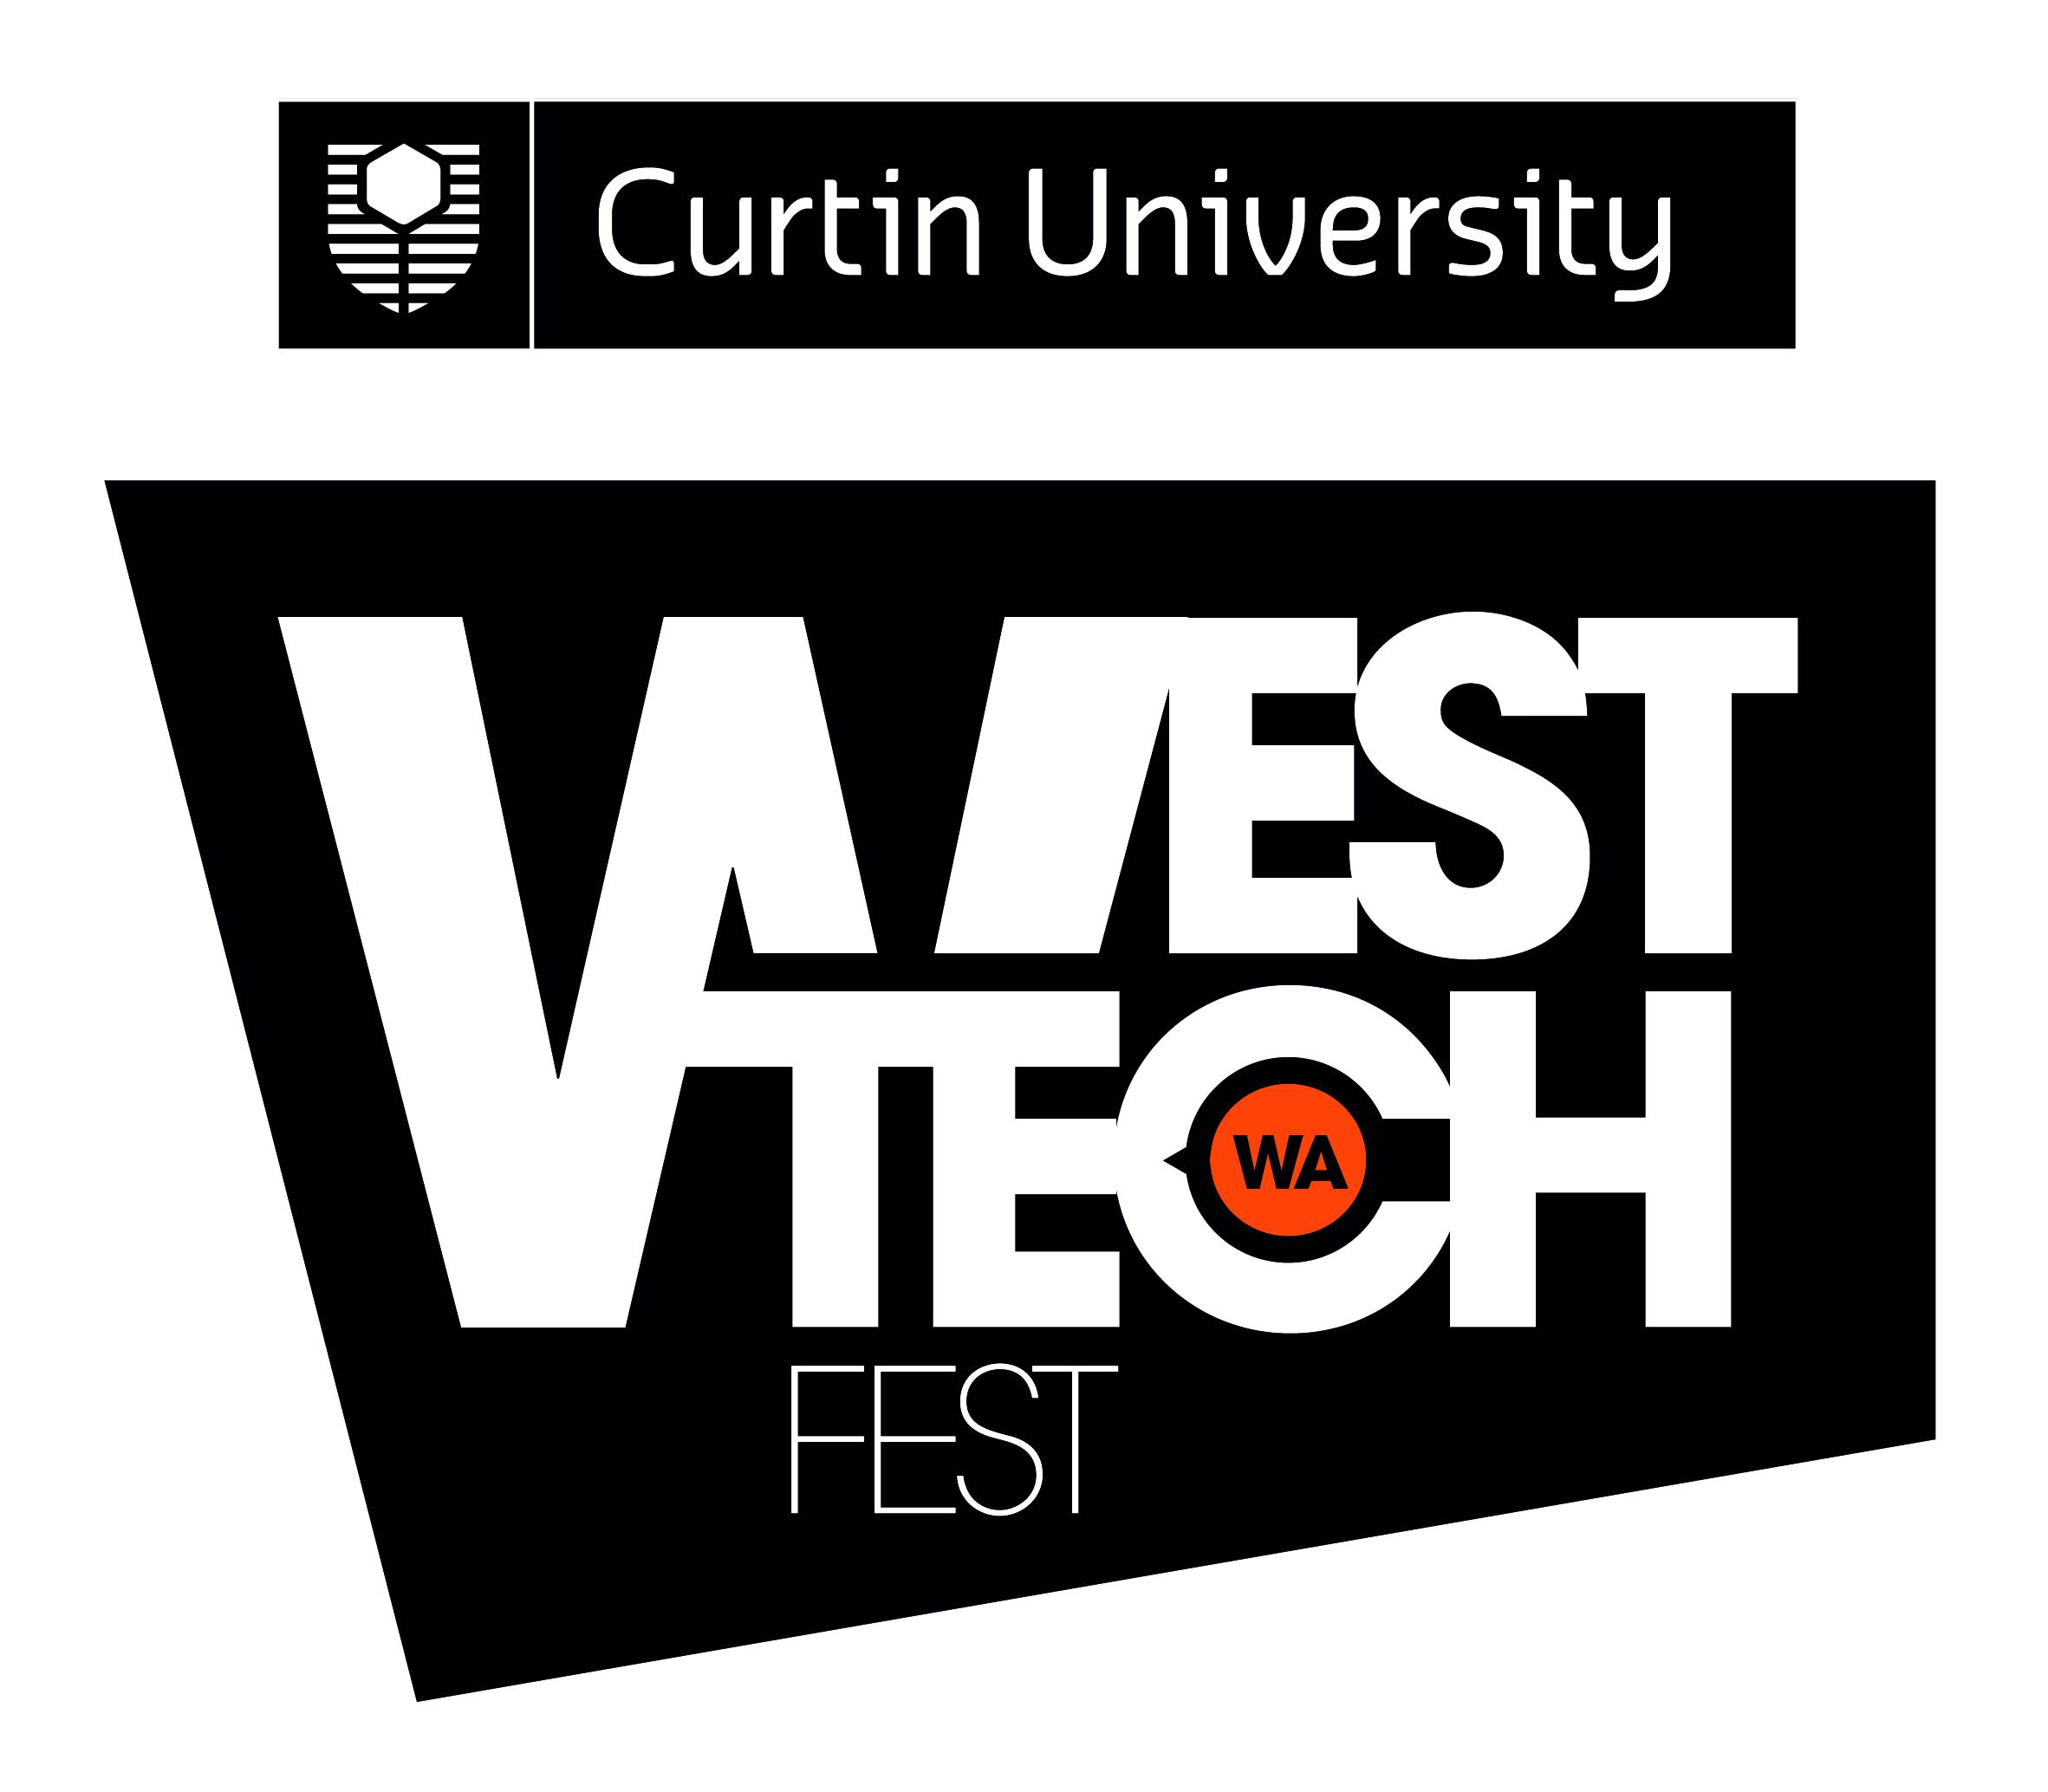 West Tech Fest